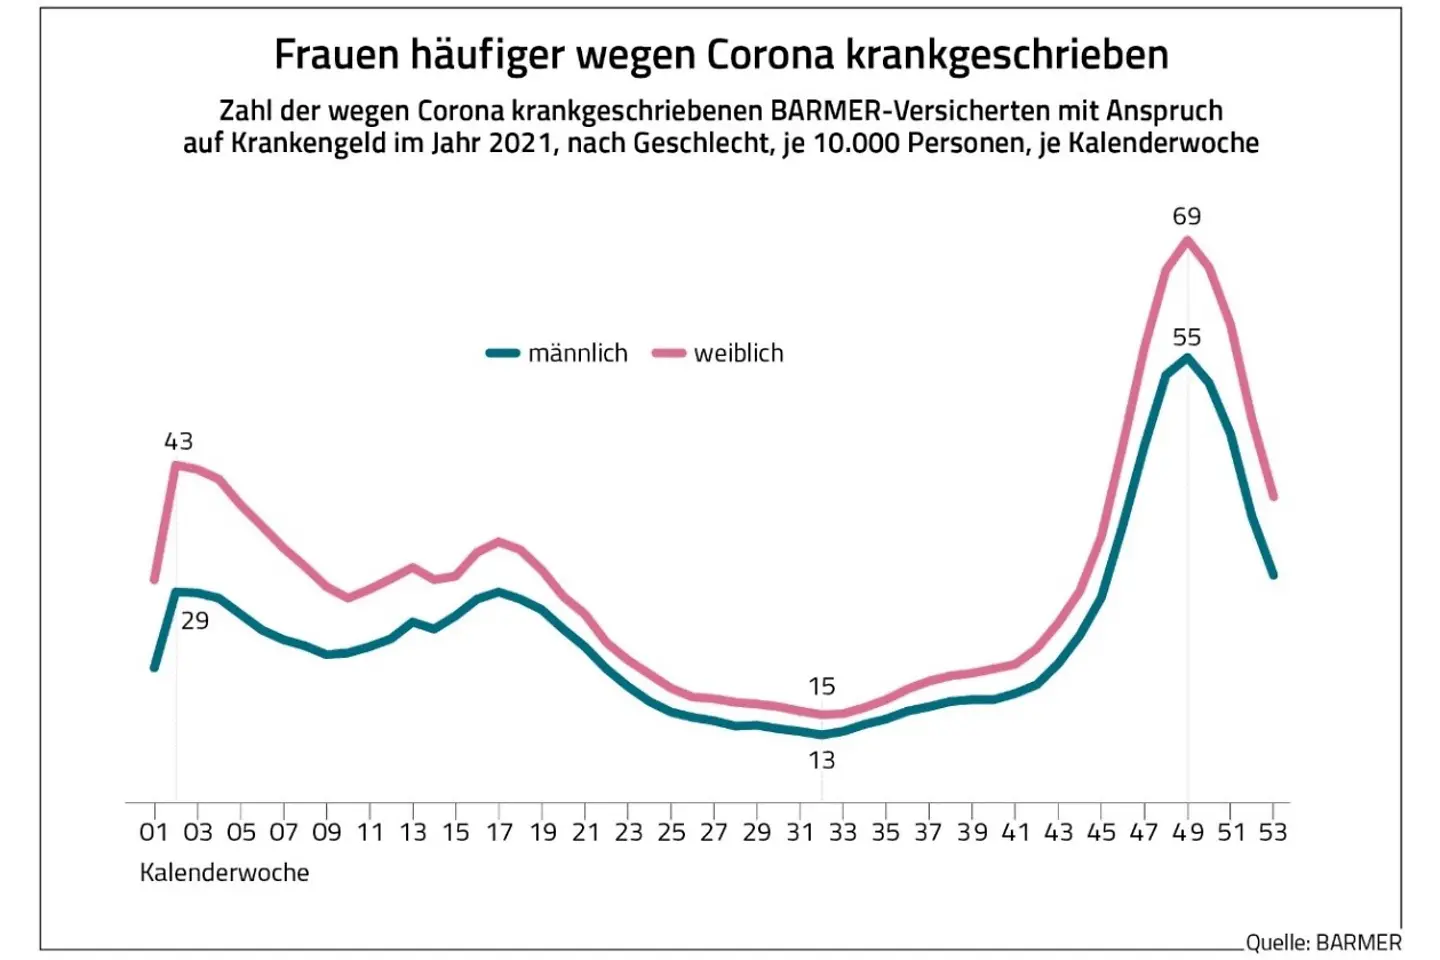 Die Grafik zeigt die Krankschreibungen wegen Corona im Jahr 2021 nach Geschlecht.